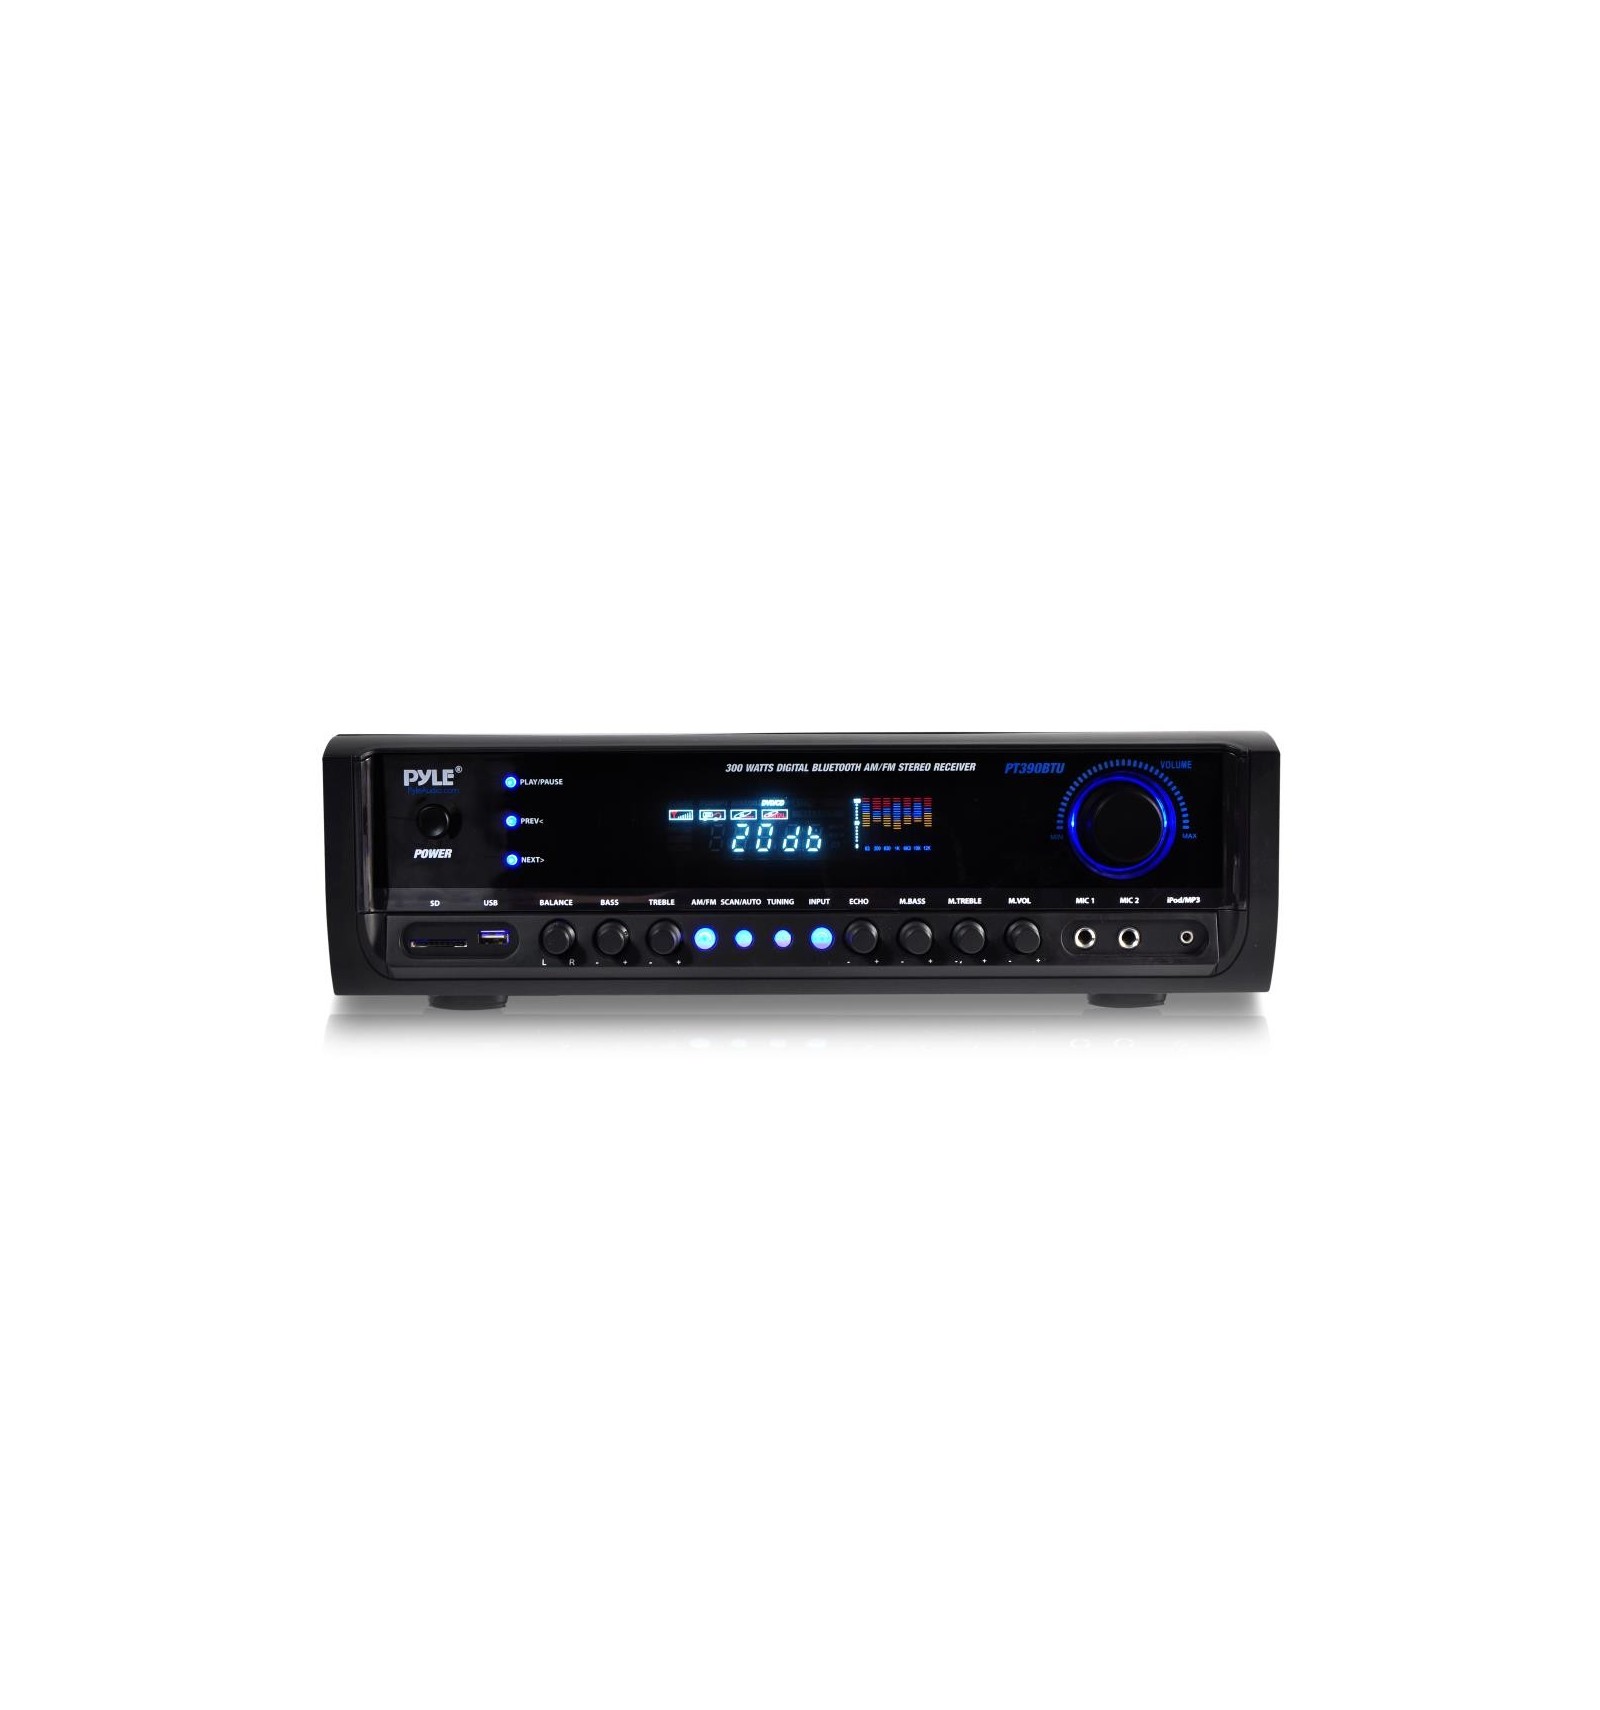  Receptor amplificador de audio estéreo Bluetooth 5.0 - Receptor  de sonido de doble canal HiFi de 300 W con USB, tarjeta SD, radio FM, 2  entradas de micrófono, control remoto, mini